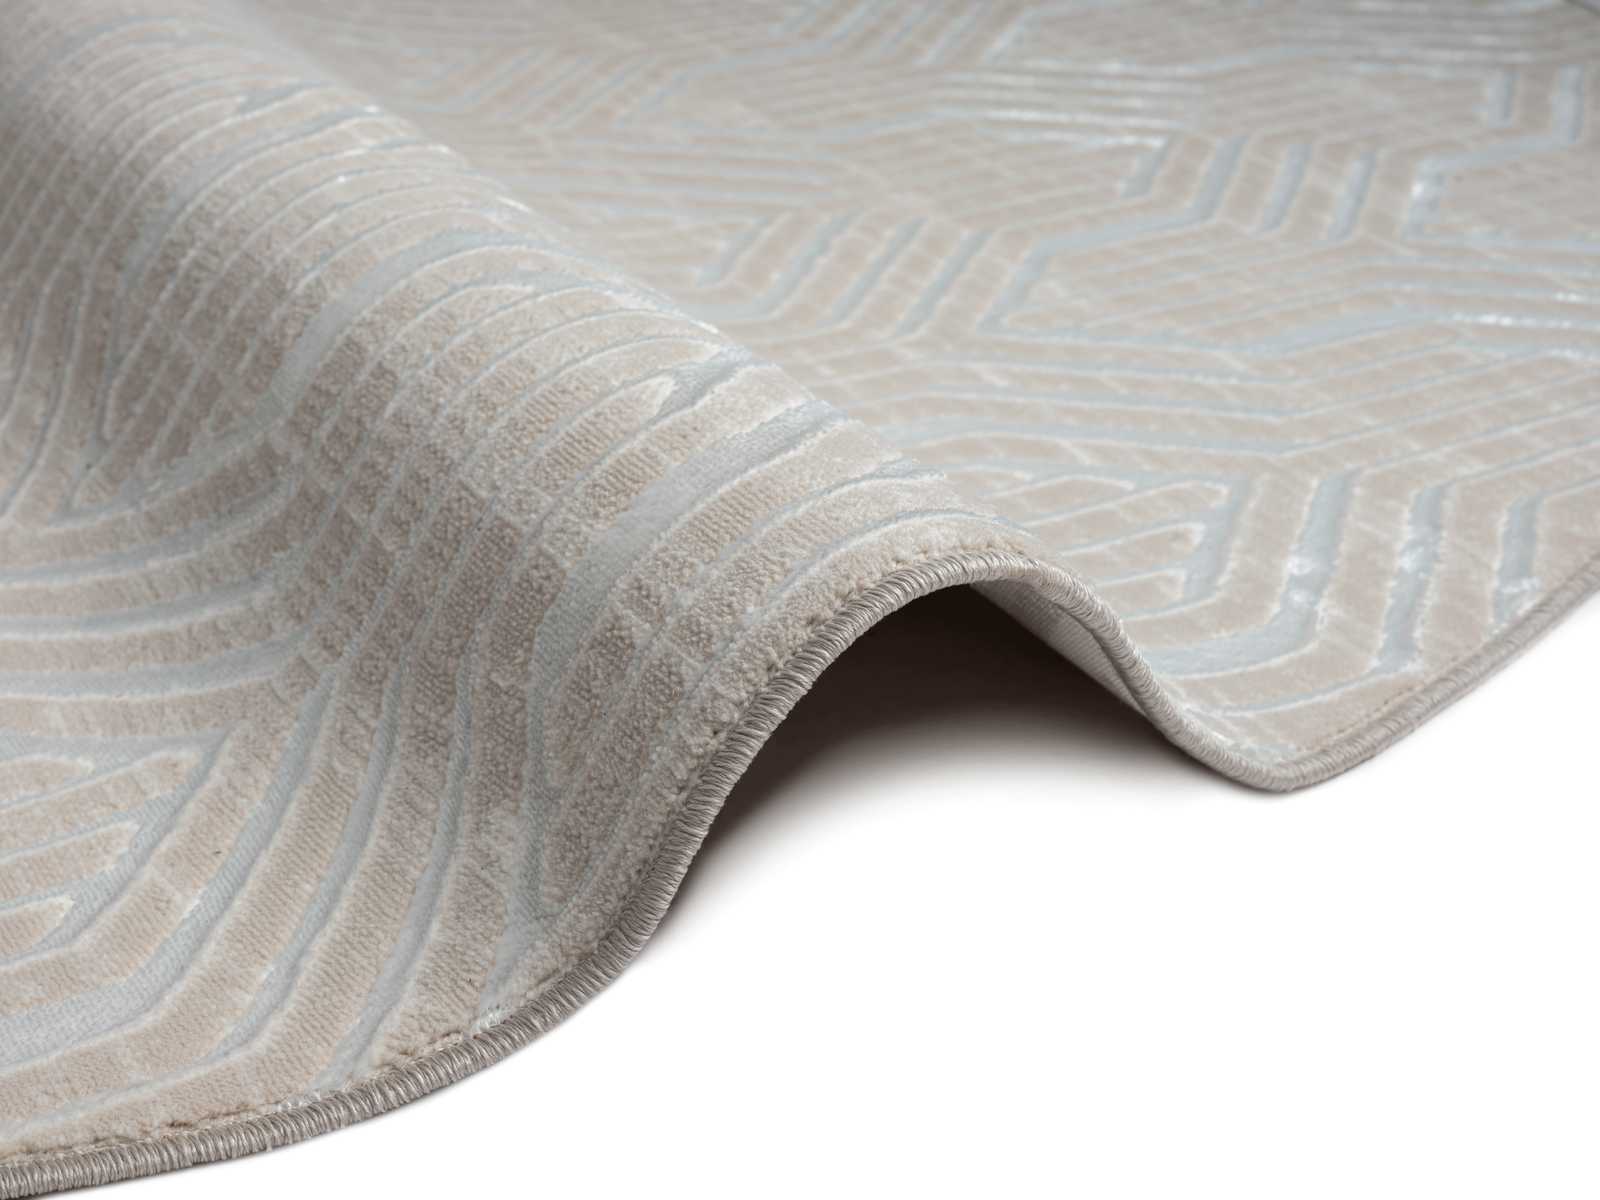             Zachtpolig tapijt in crème - 230 x 160 cm
        